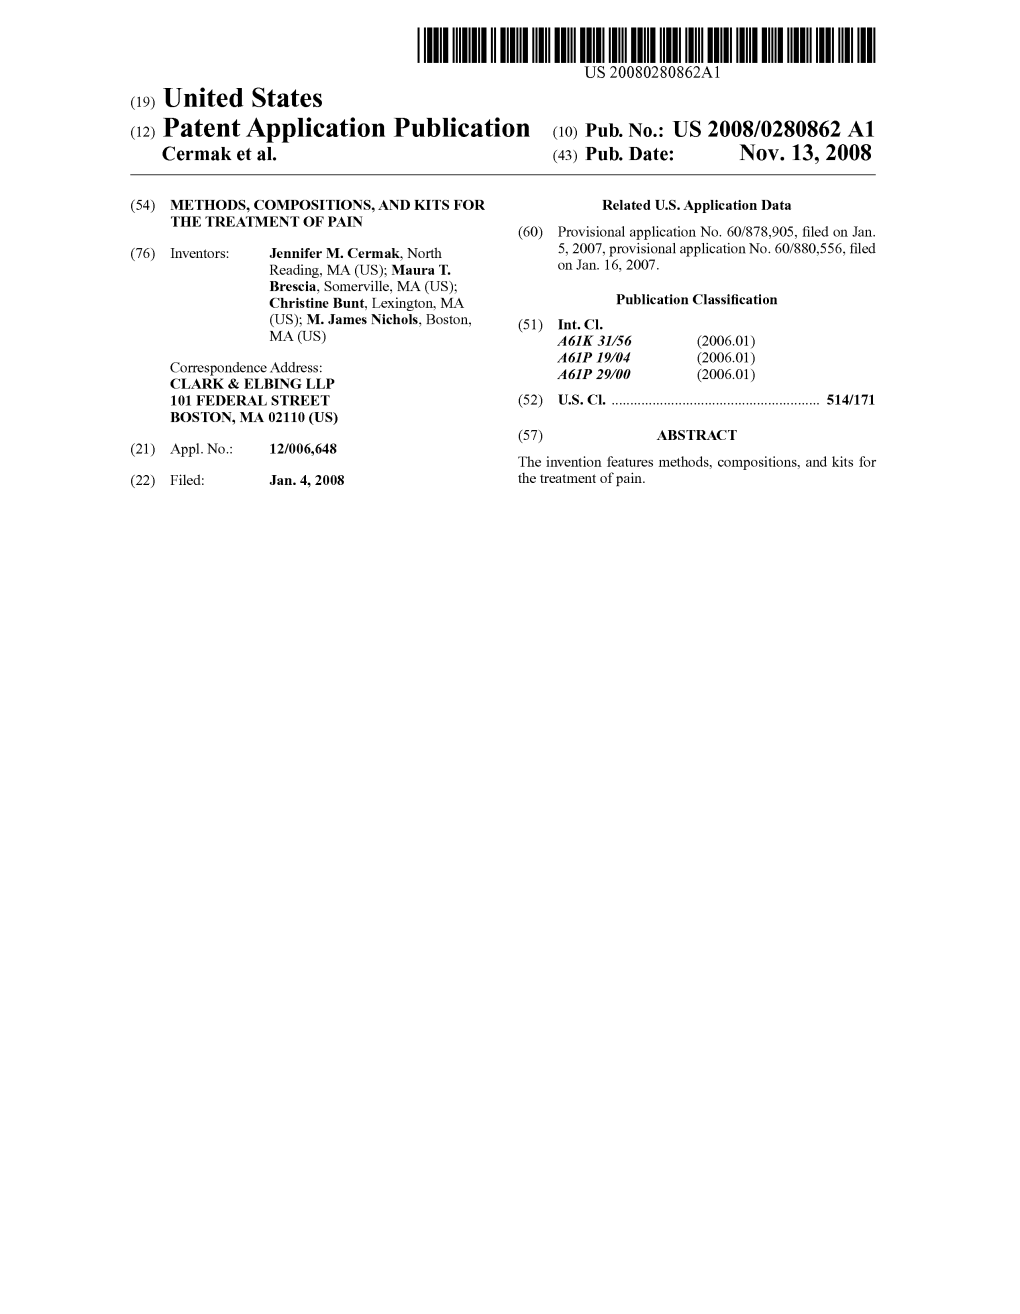 (12) Patent Application Publication (10) Pub. No.: US 2008/0280862 A1 Cermak Et Al